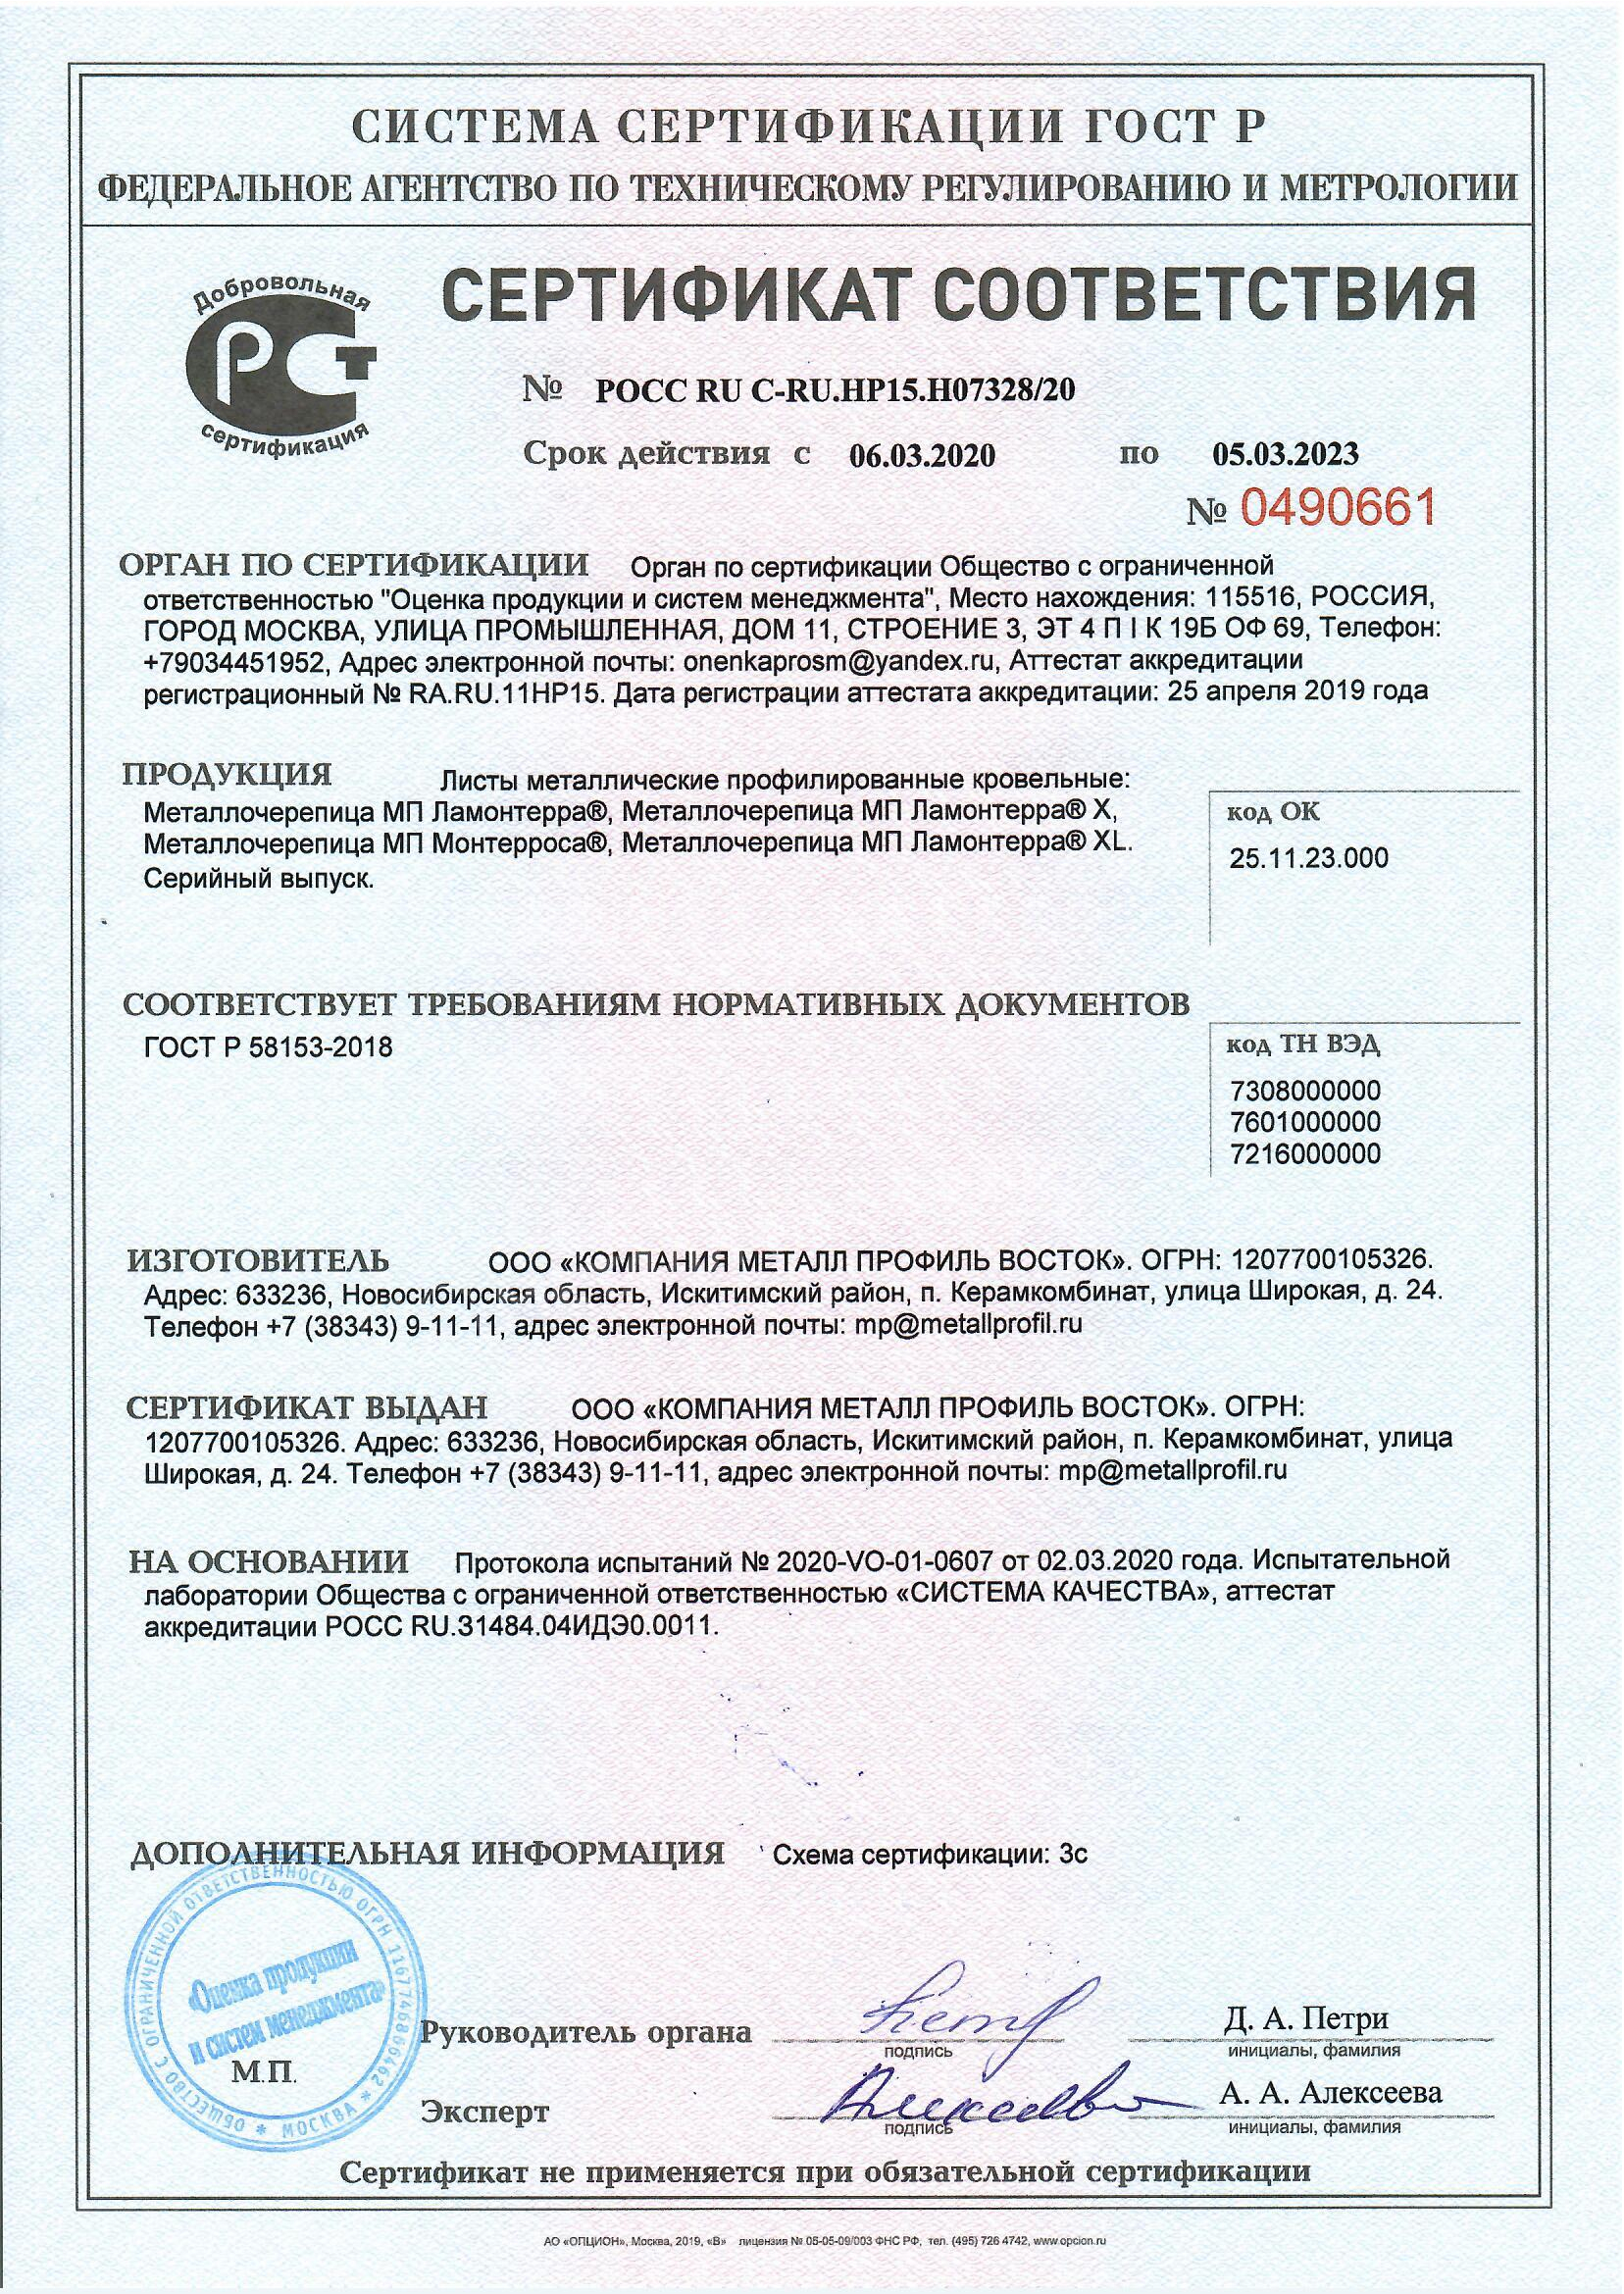 Сертификат соответствия КМП Металлочерепица по ГОСТ